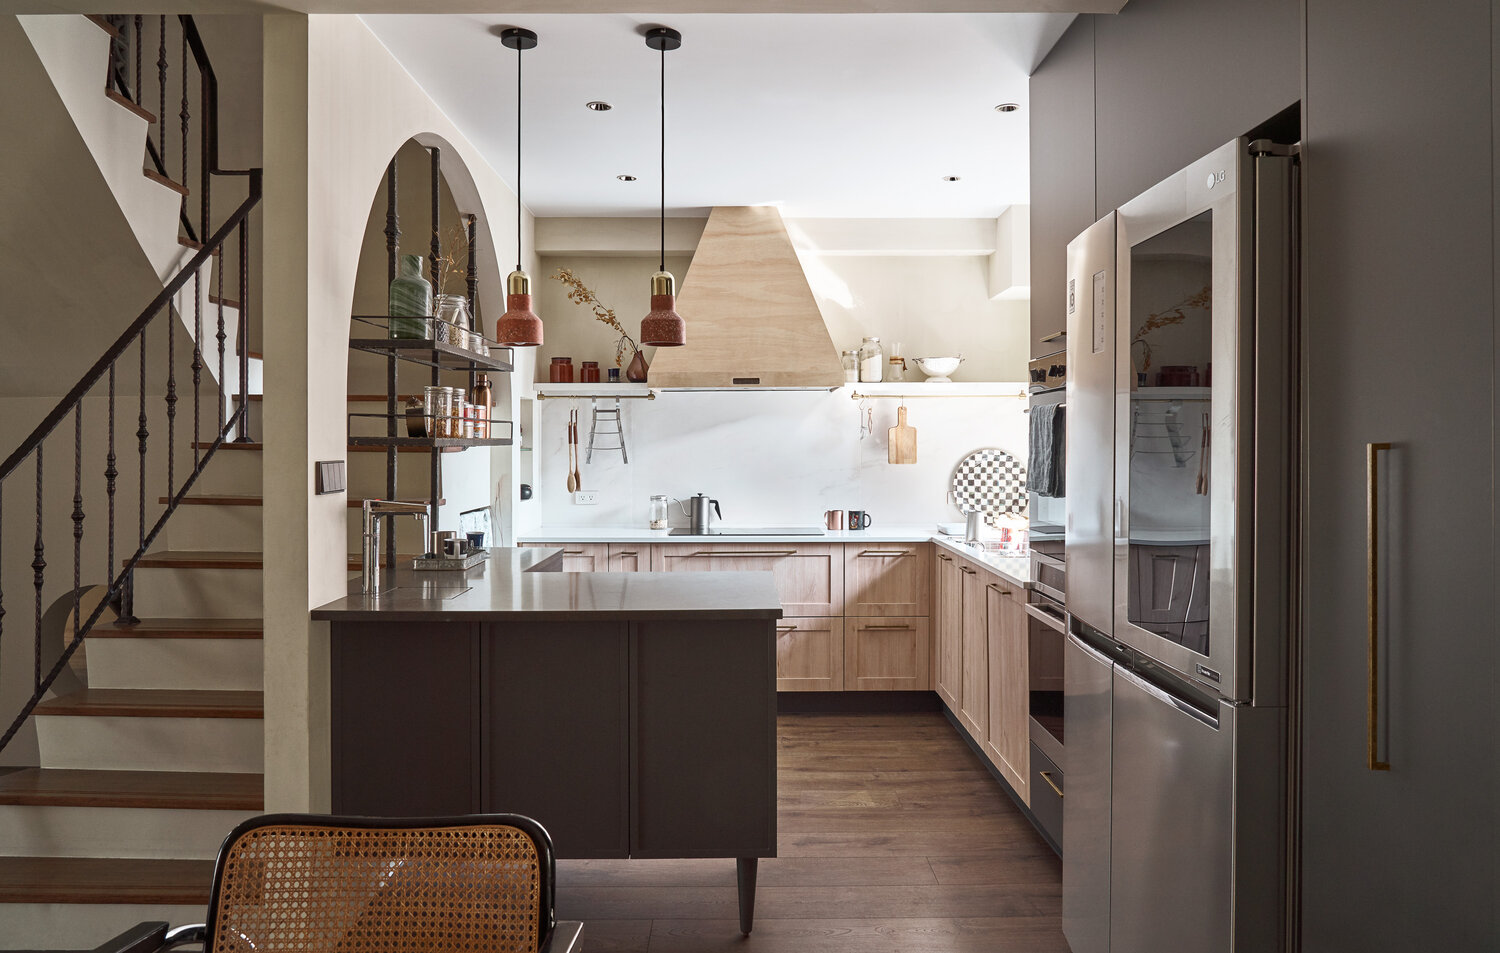 Phòng bếp được bố trí nhỏ gọn với khung cửa mái vòm cong cong tuyệt đẹp, kết hợp với kệ lưu trữ gọn gàng. Tone màu gỗ và trắng kết hợp cùng nhau cho khu vực nấu nướng vẻ đẹp tươi tắn.